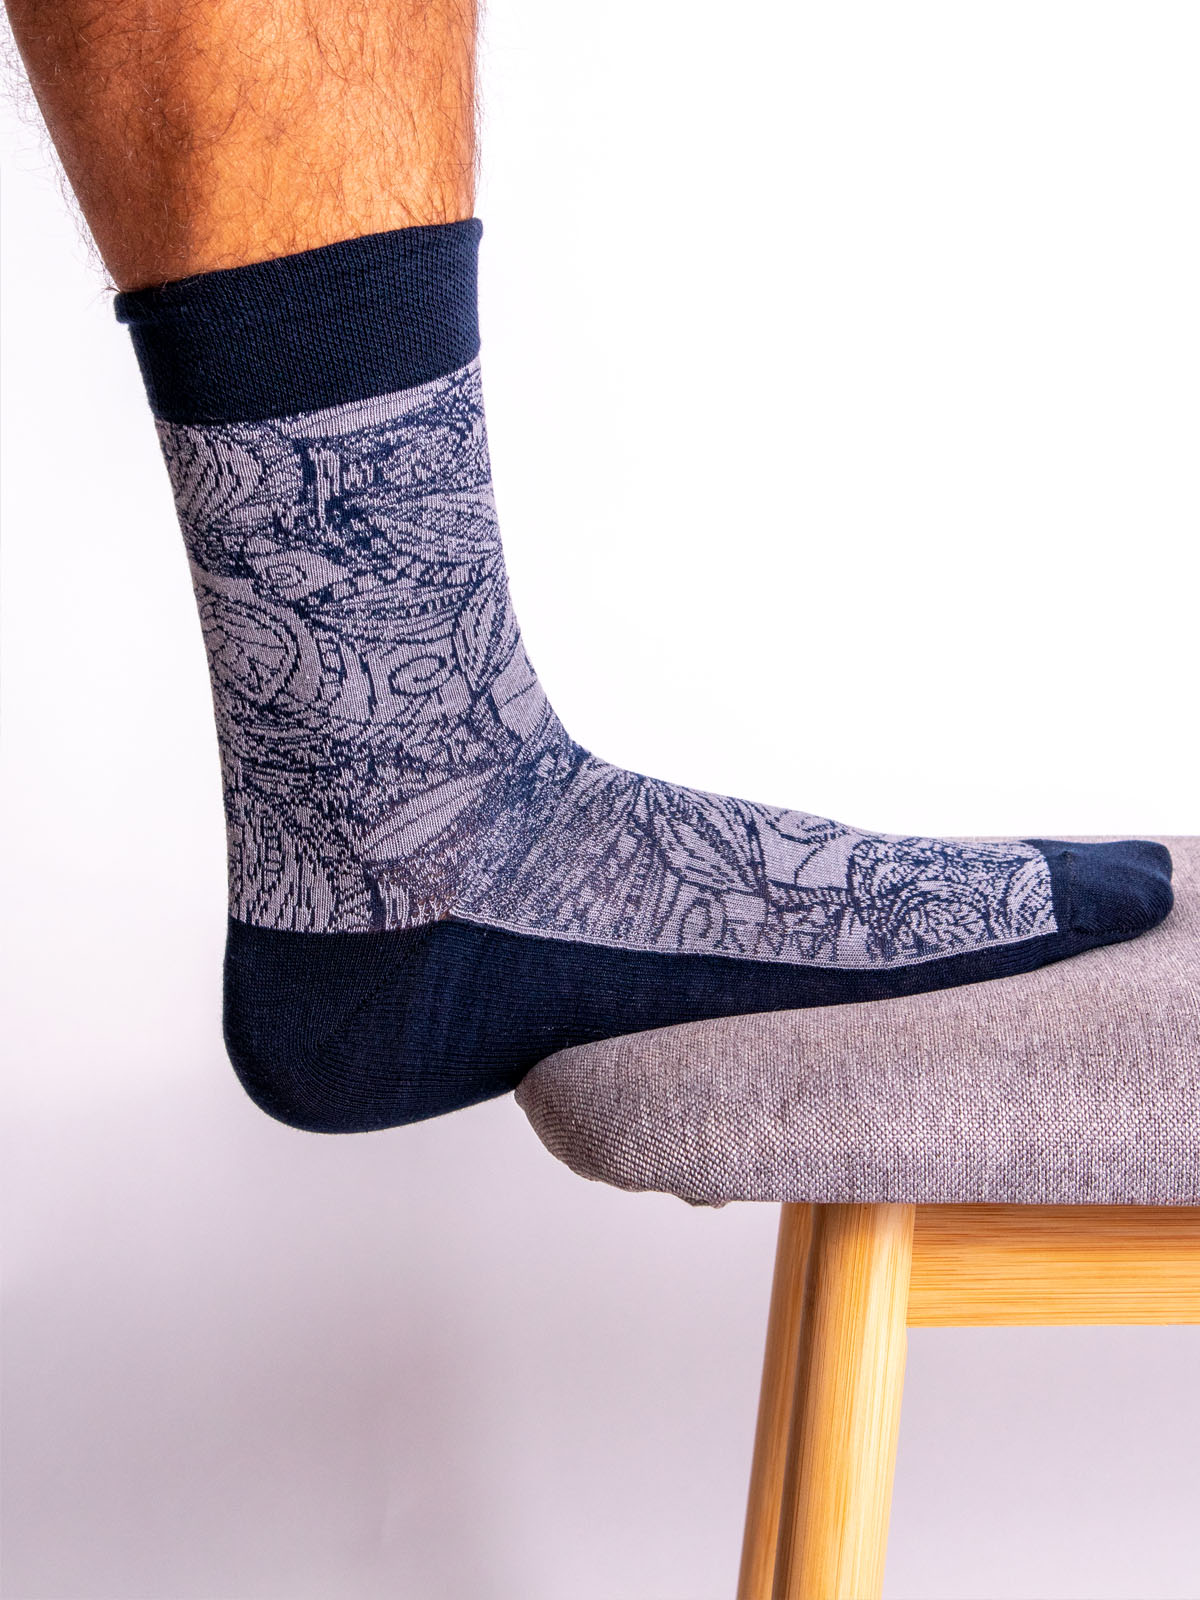 Κάλτσες με αντίθεση μοτίβο σε μπεζ - 10527 - € 3.94 img2